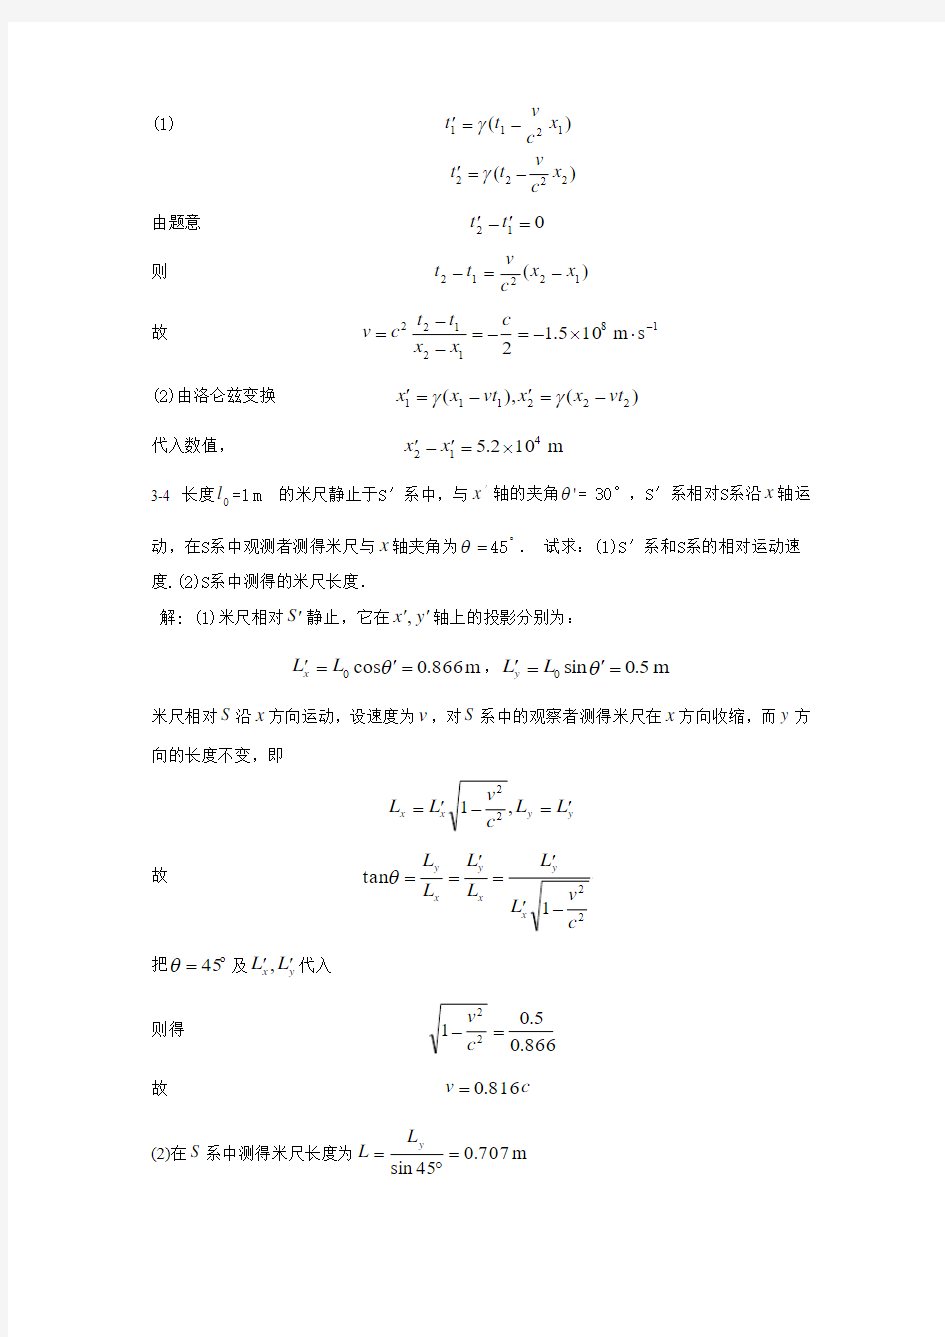 大学物理学(第三版)赵近芳 第三章答案